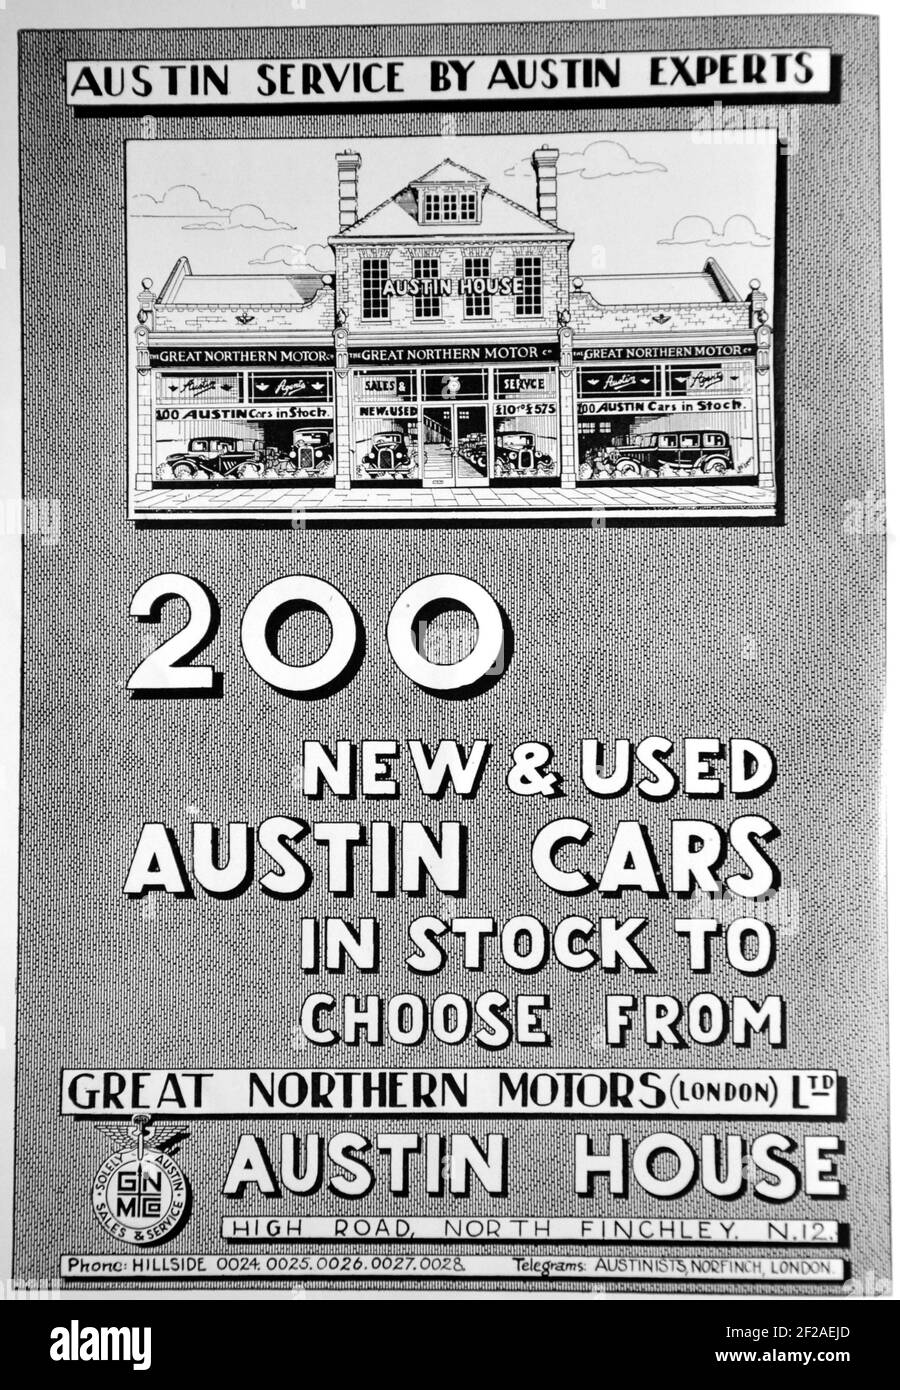 Werbung für neue und gebrauchte Austin Autos bei Great Northern Motors, High Road, North Finchley, N12. Aus dem Buch: 'FINCHLEY CELEBRATIONS ROYAL SILVER JUBILEE May 1935 Souvenir Handbook'. Stockfoto